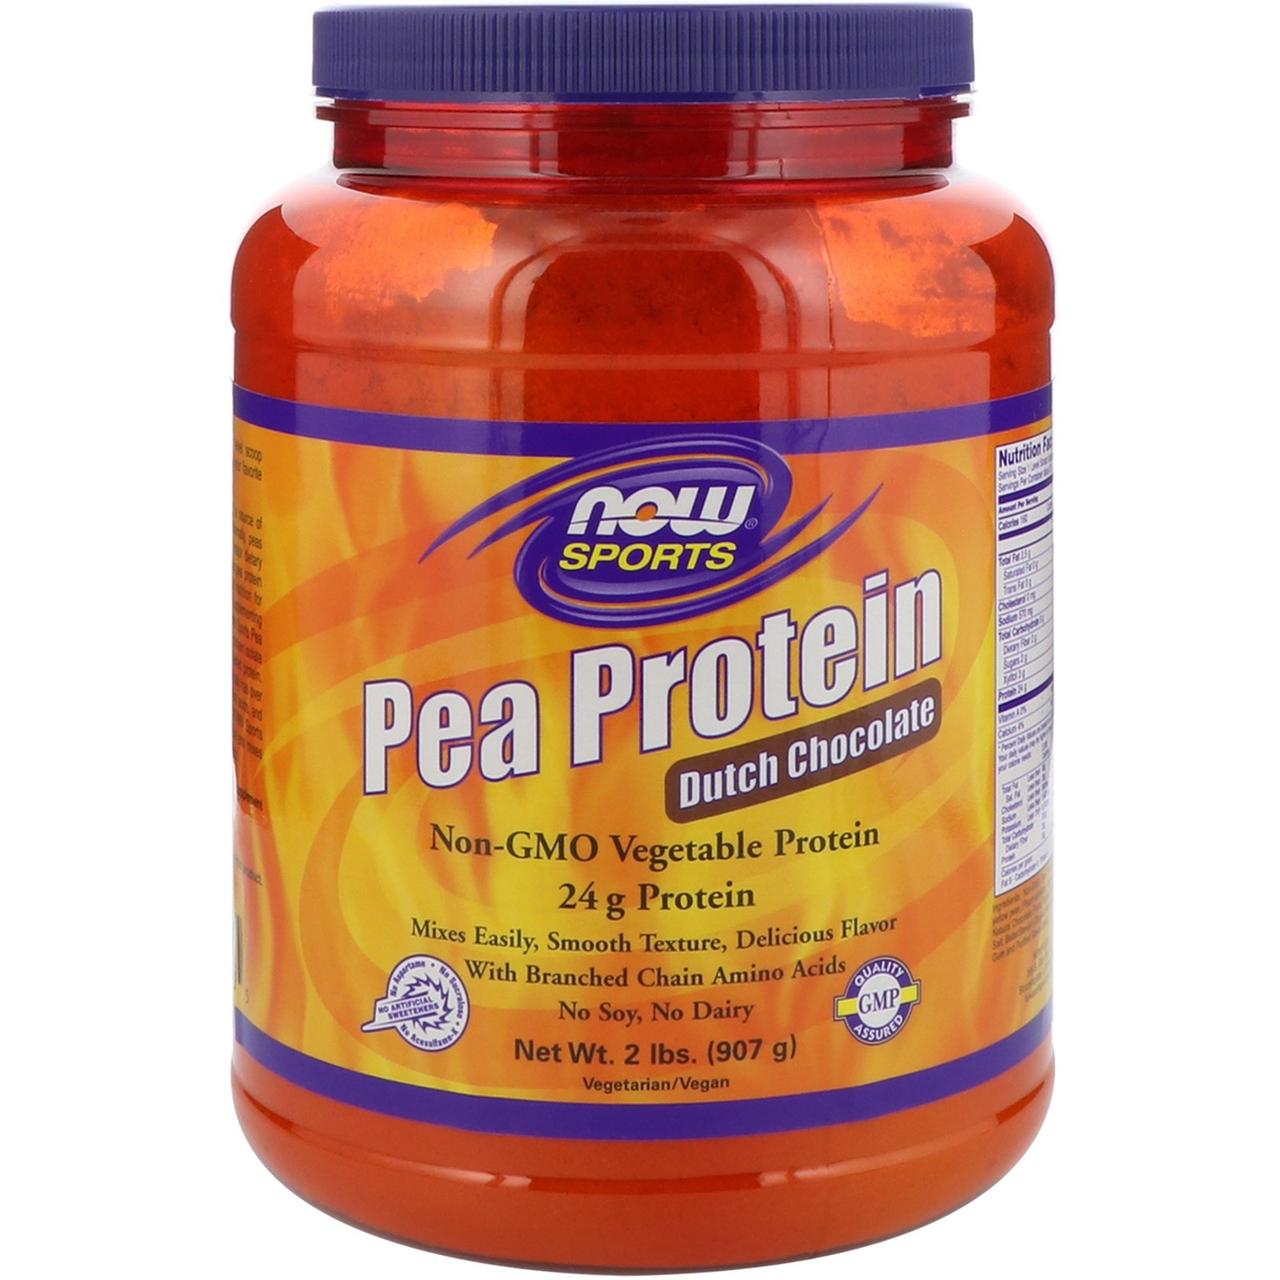 Гороховый Протеин, Вкус Шоколада, NOW, 2 фунта (907 гр),  мл, Now. Растительный протеин. 